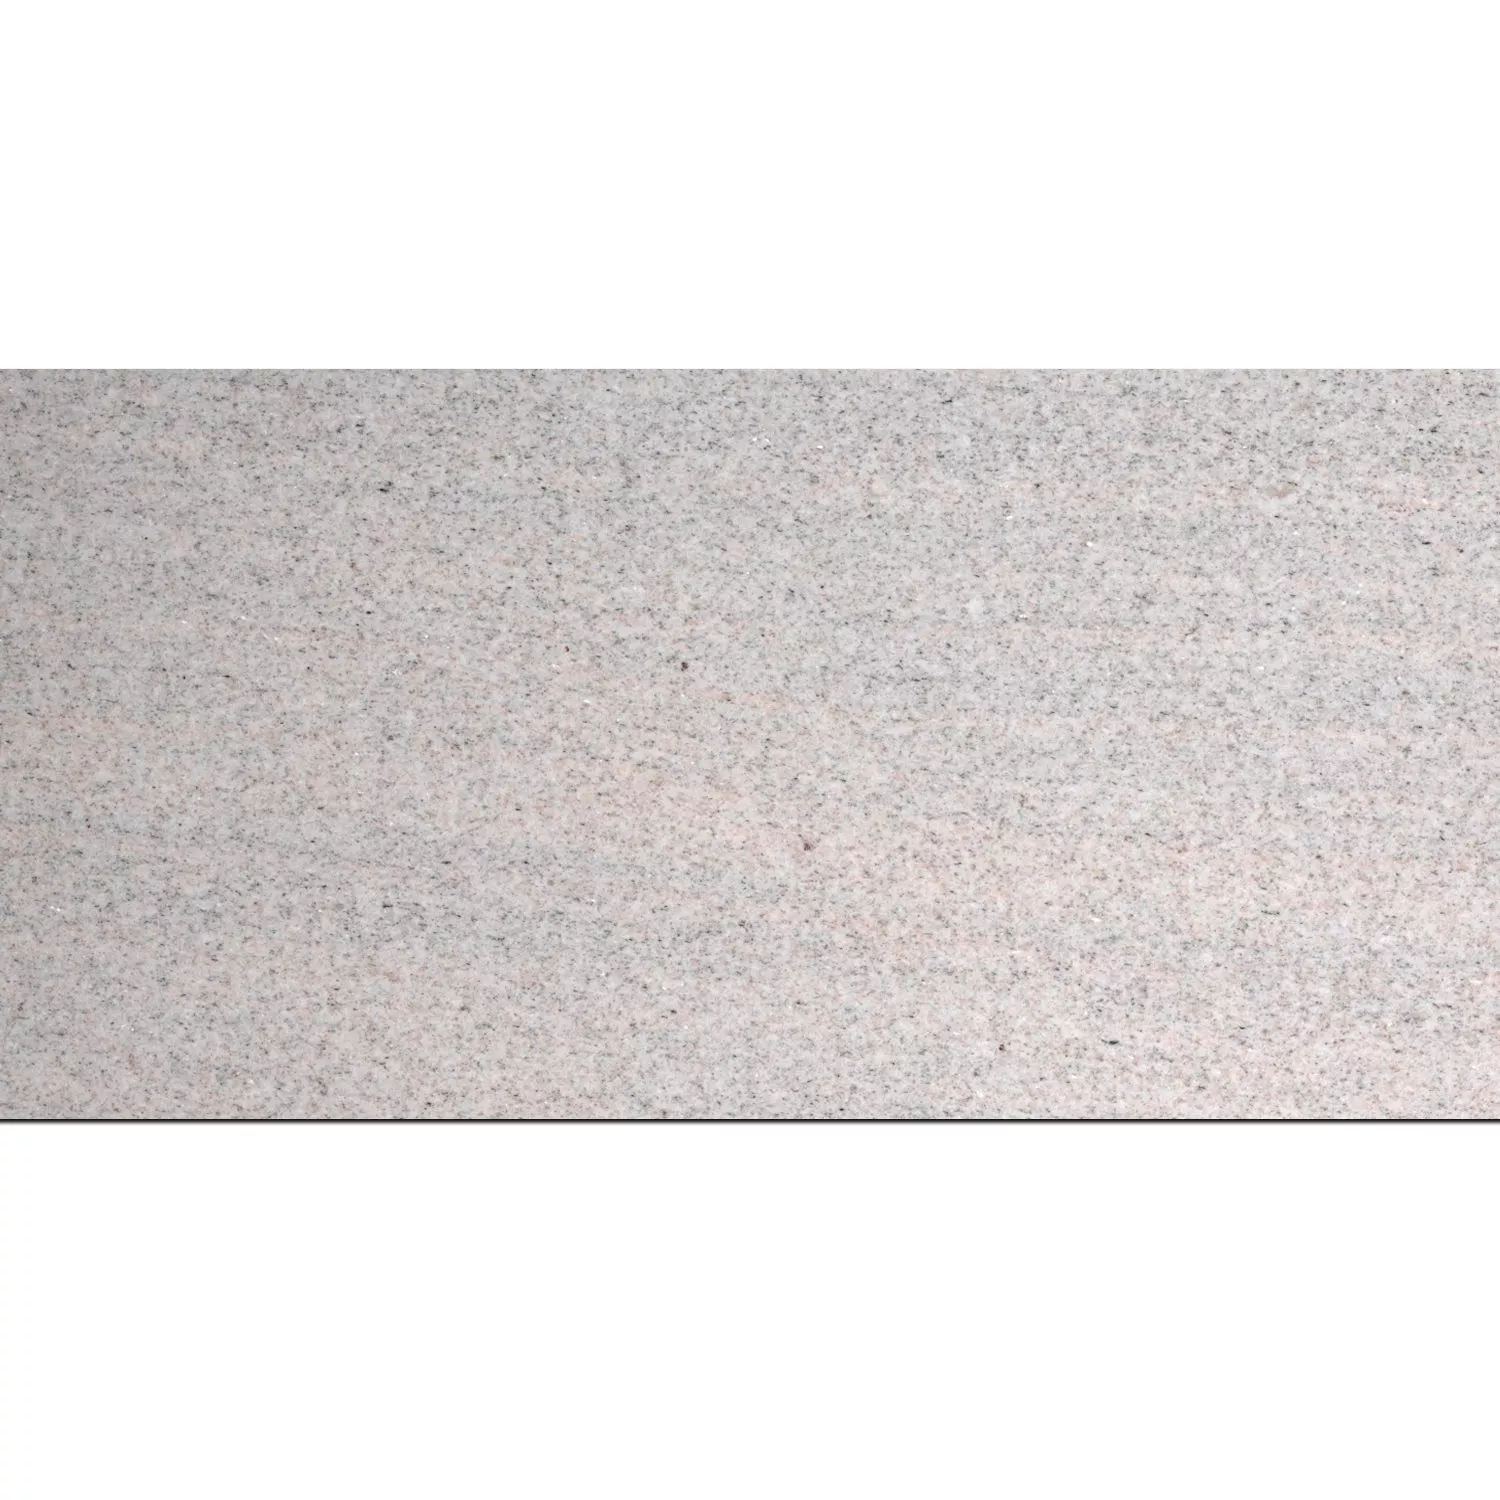 Natursteinfliesen Granit Imperial White Poliert 30,5x61cm